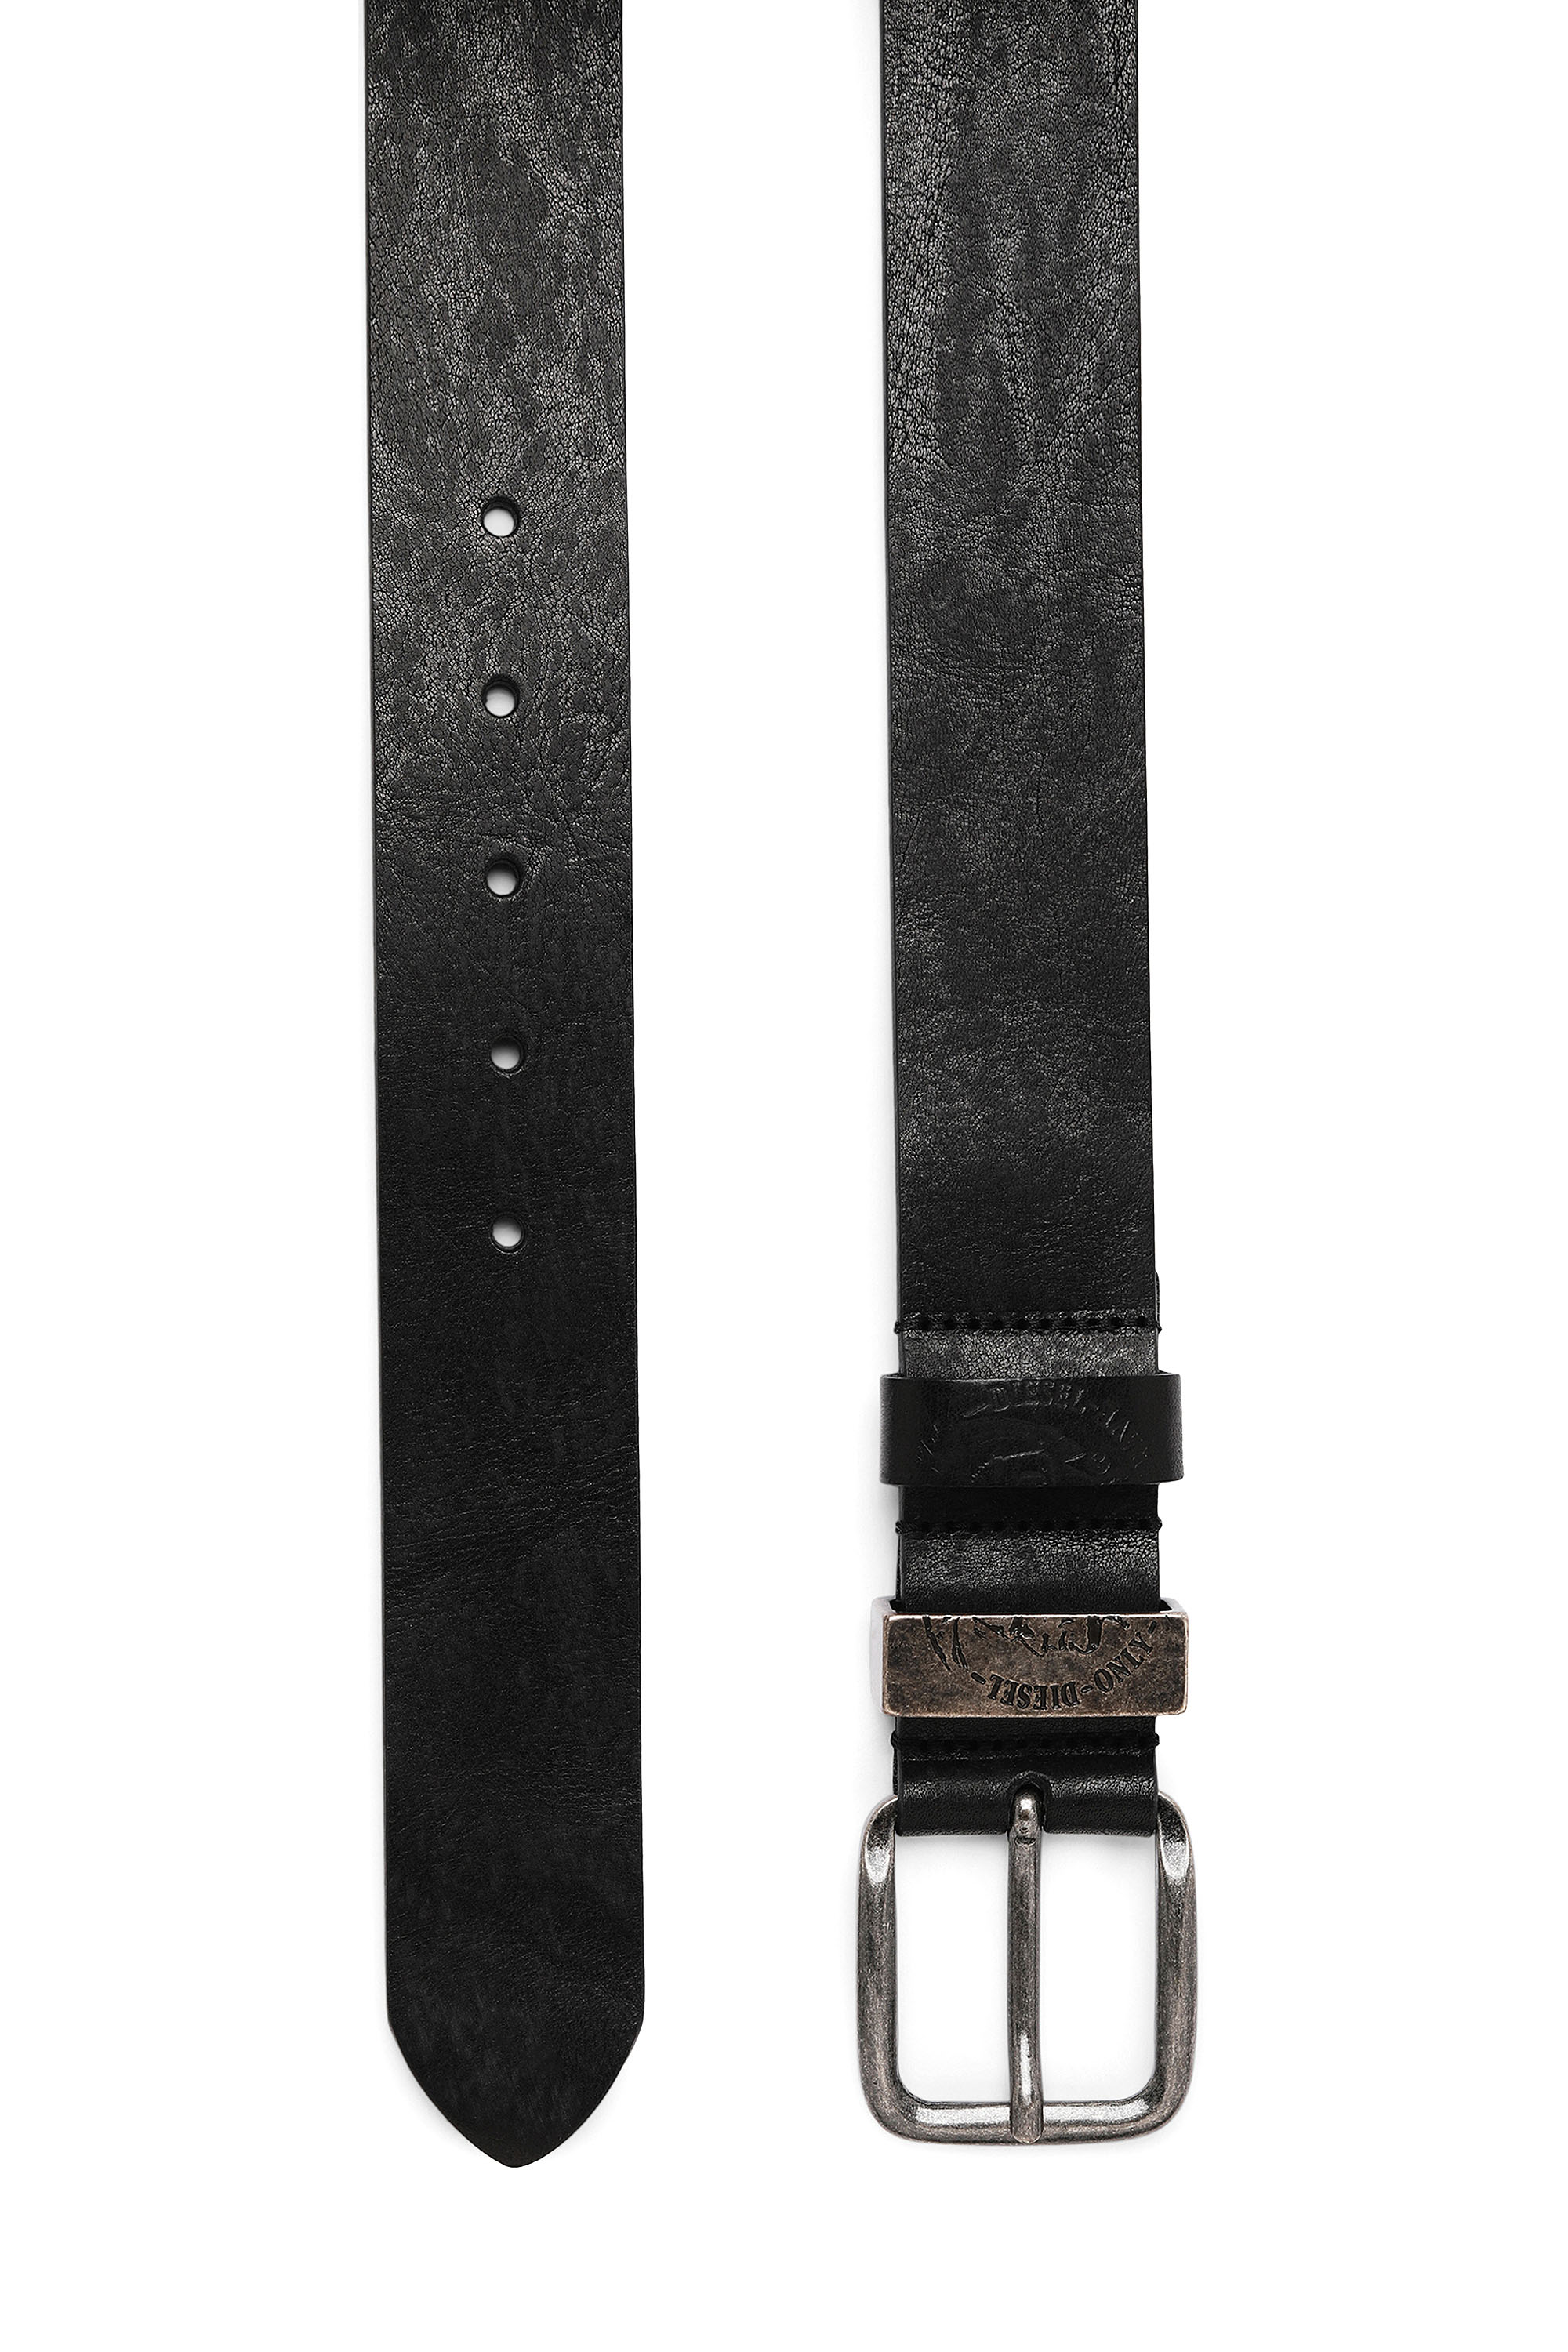 Diesel - B-FRAG, Black Leather - Image 3